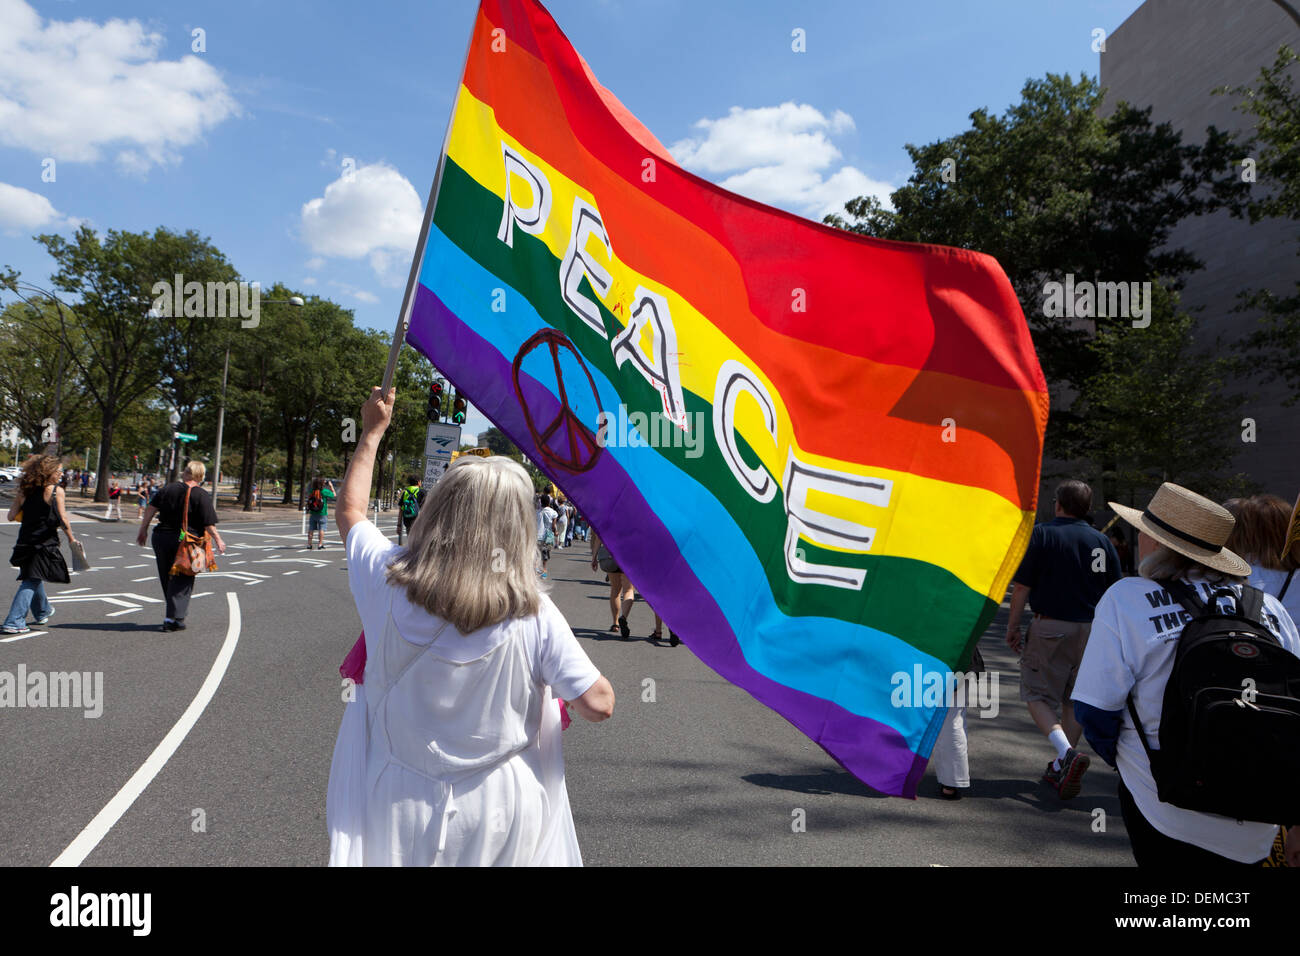 Brandissant des drapeaux de la paix femme arc-en-ciel - Washington, DC USA Banque D'Images